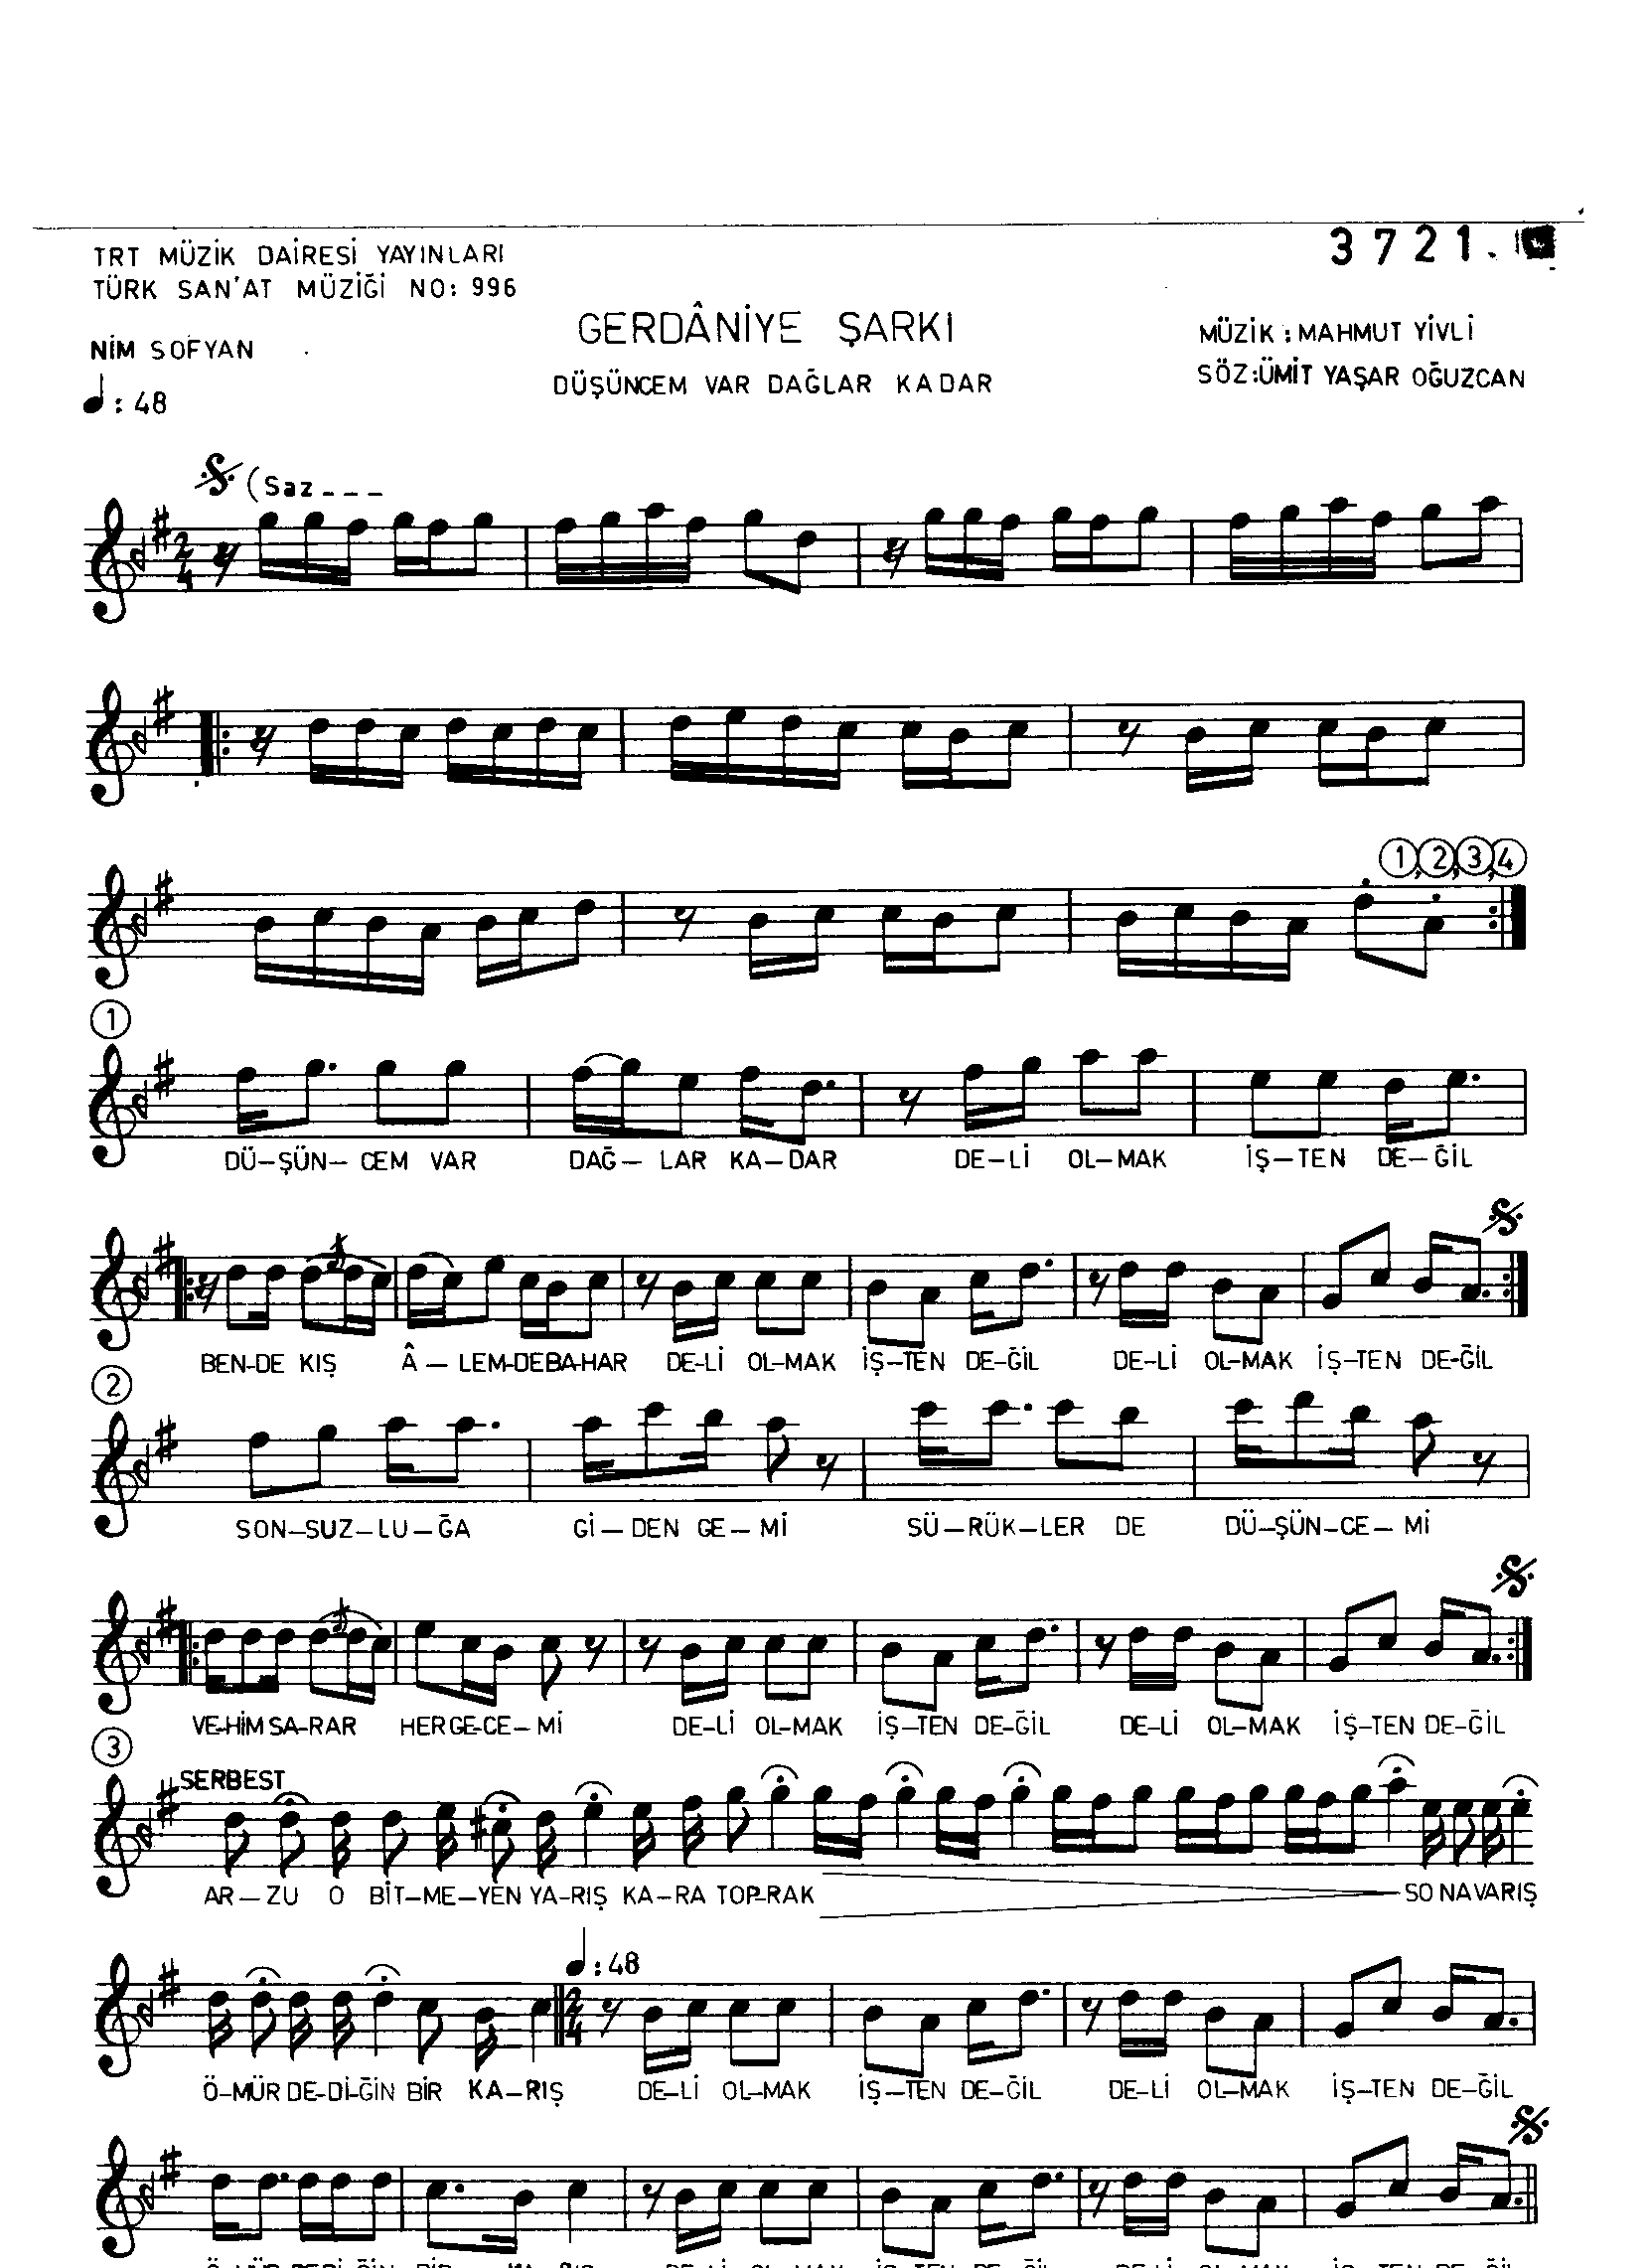 Gerdâniye - Şarkı - Mahmut Yivli - Sayfa 1